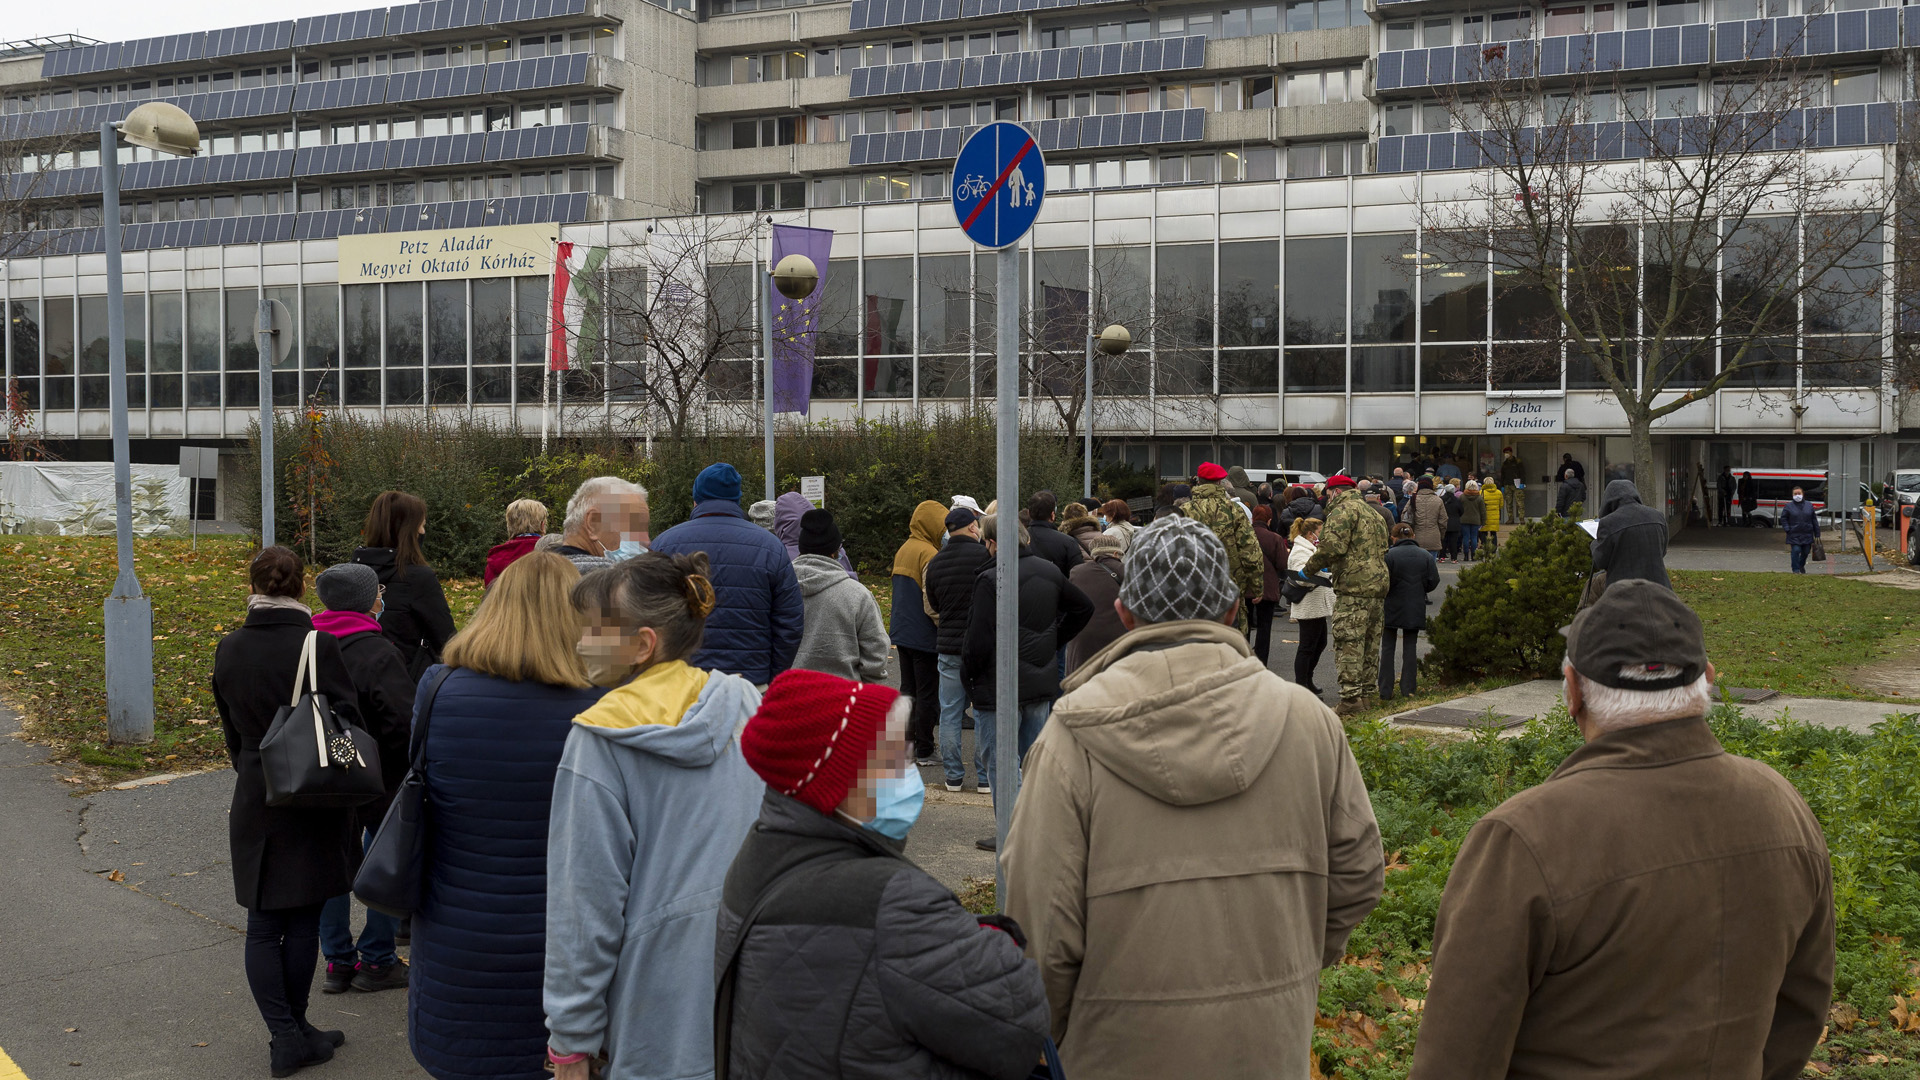 Elkél a segítség: Oltásra várakozók a győri Petz Aladár Megyei Oktató Kórház újonnan megnyitott oltópontja előtt 2021. november 22-én / Fotó: MTI/Krizsán Csaba